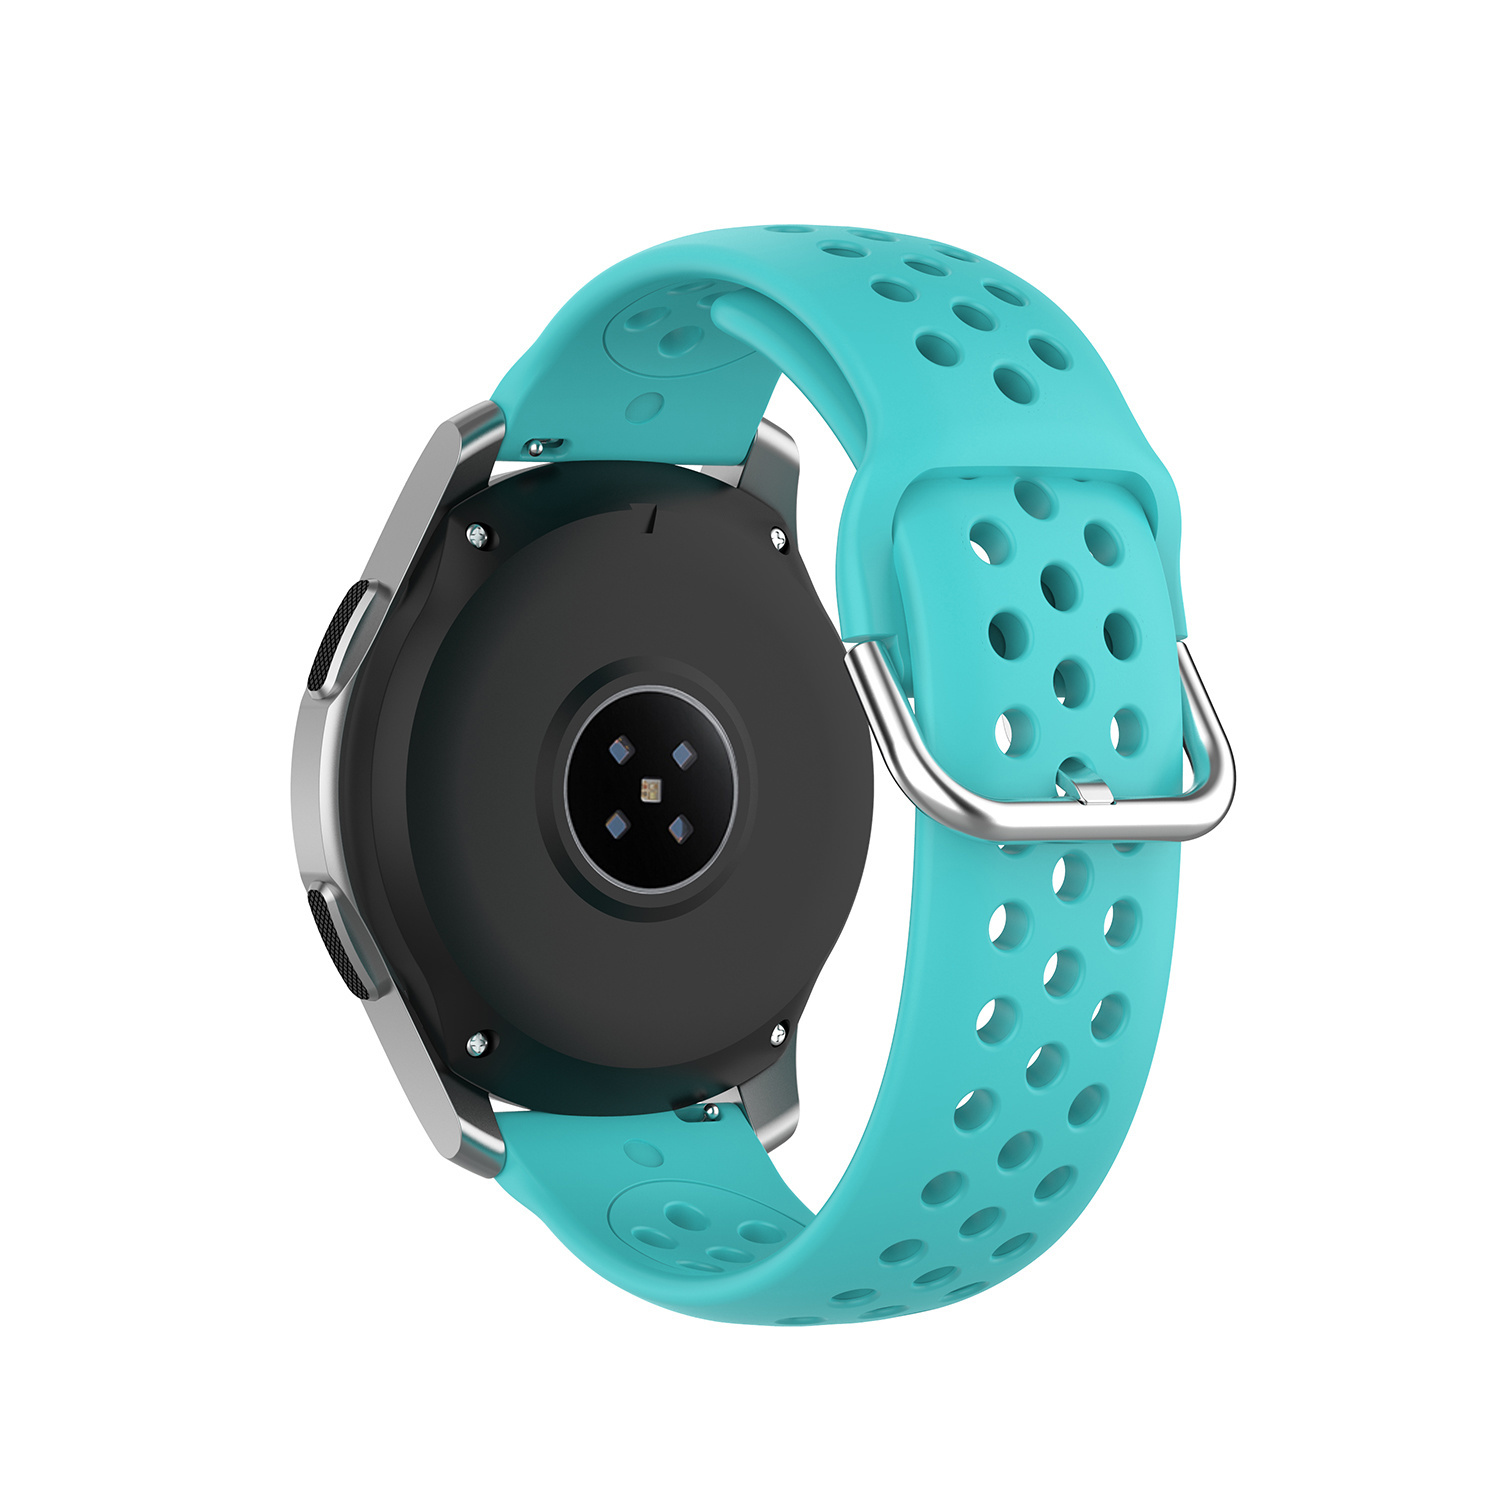 Cinturino doppia fibbia per Huawei Watch GT - verde acqua